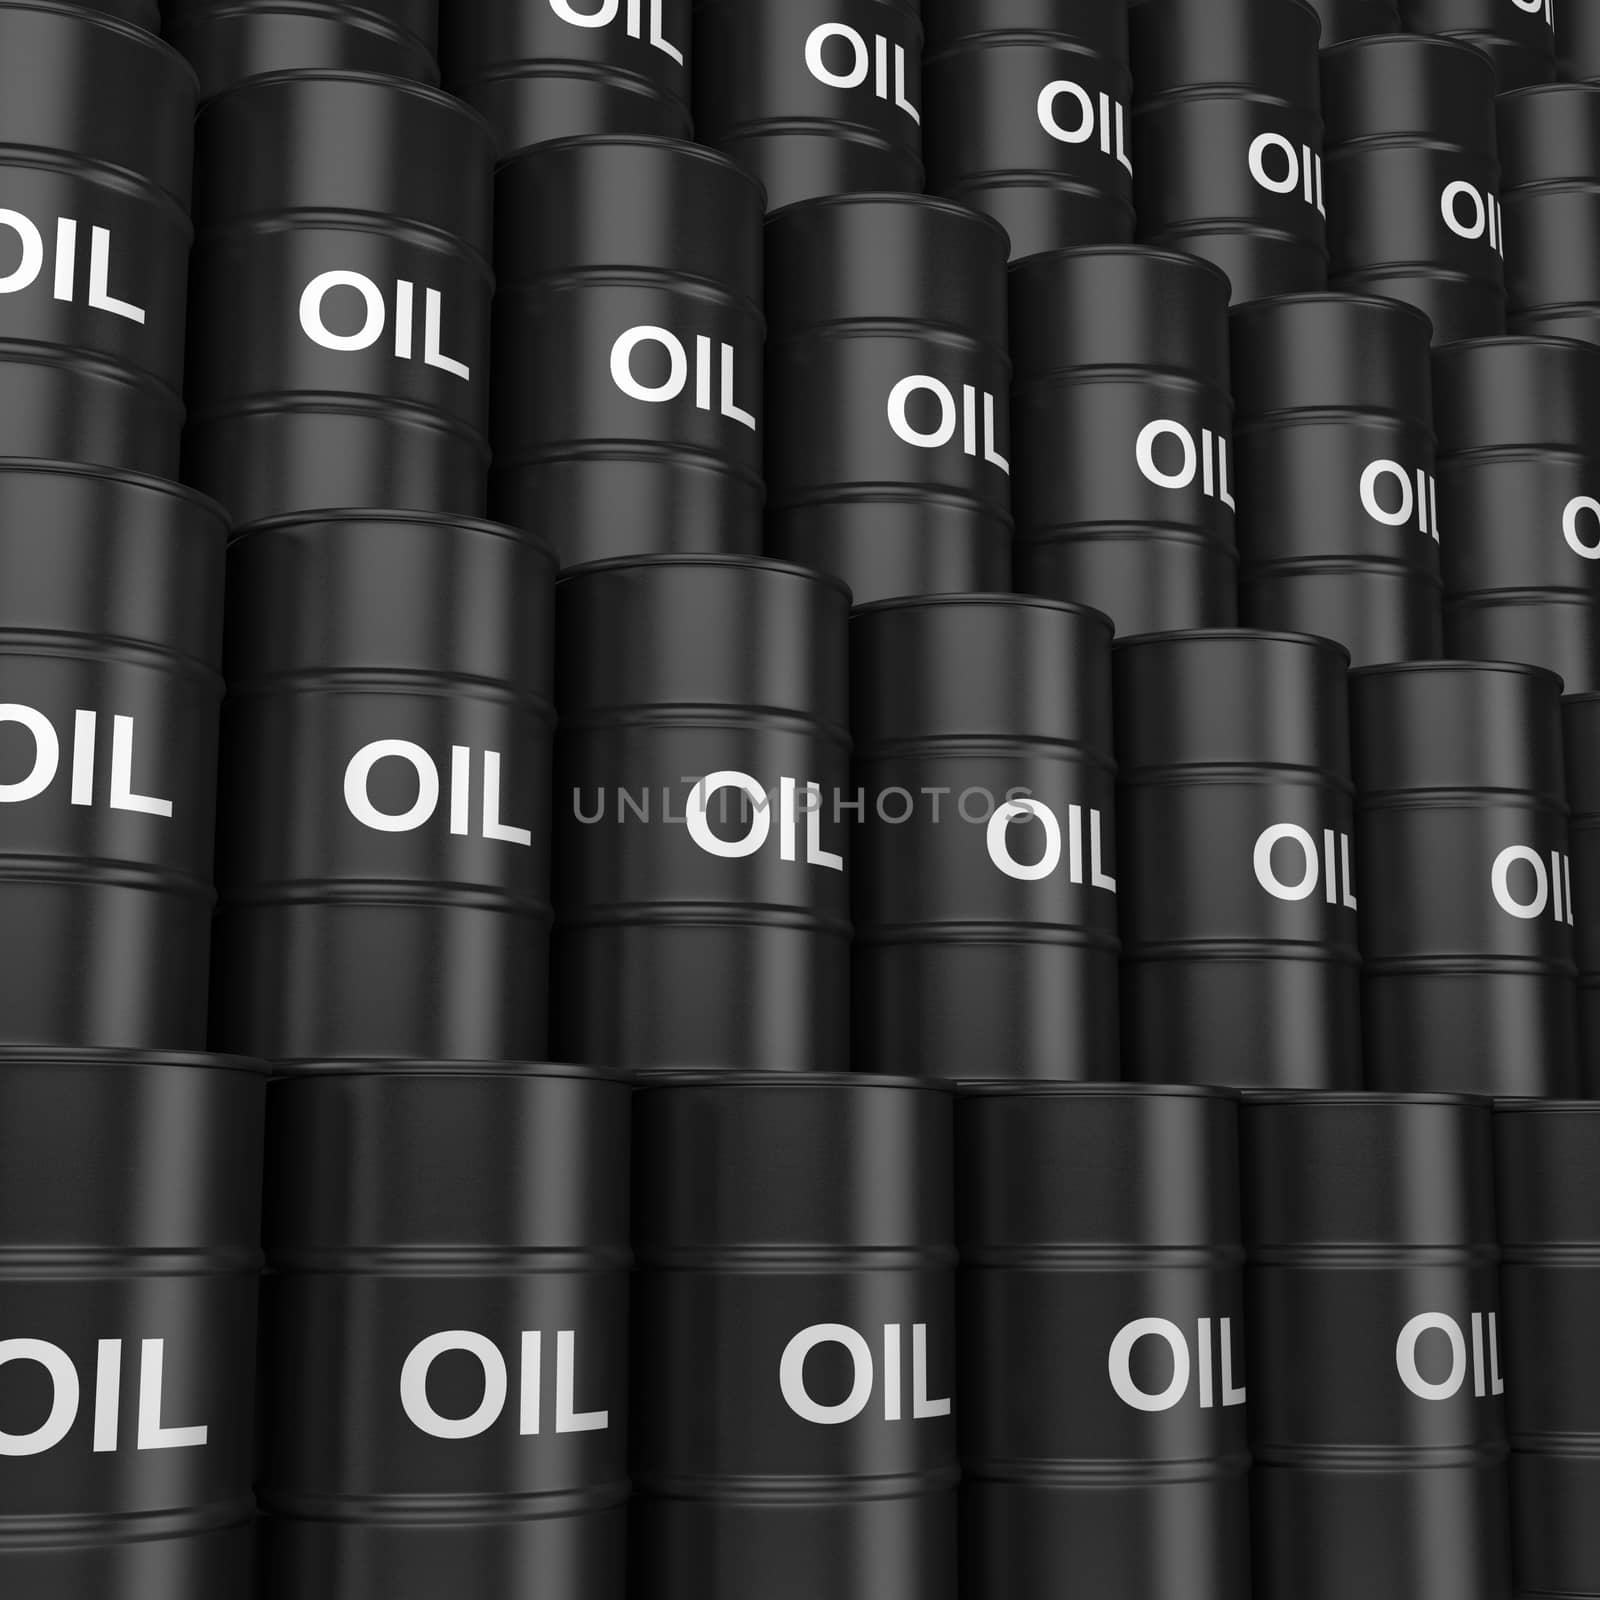 A Wall of Black Oil Barrels 3D Illustration